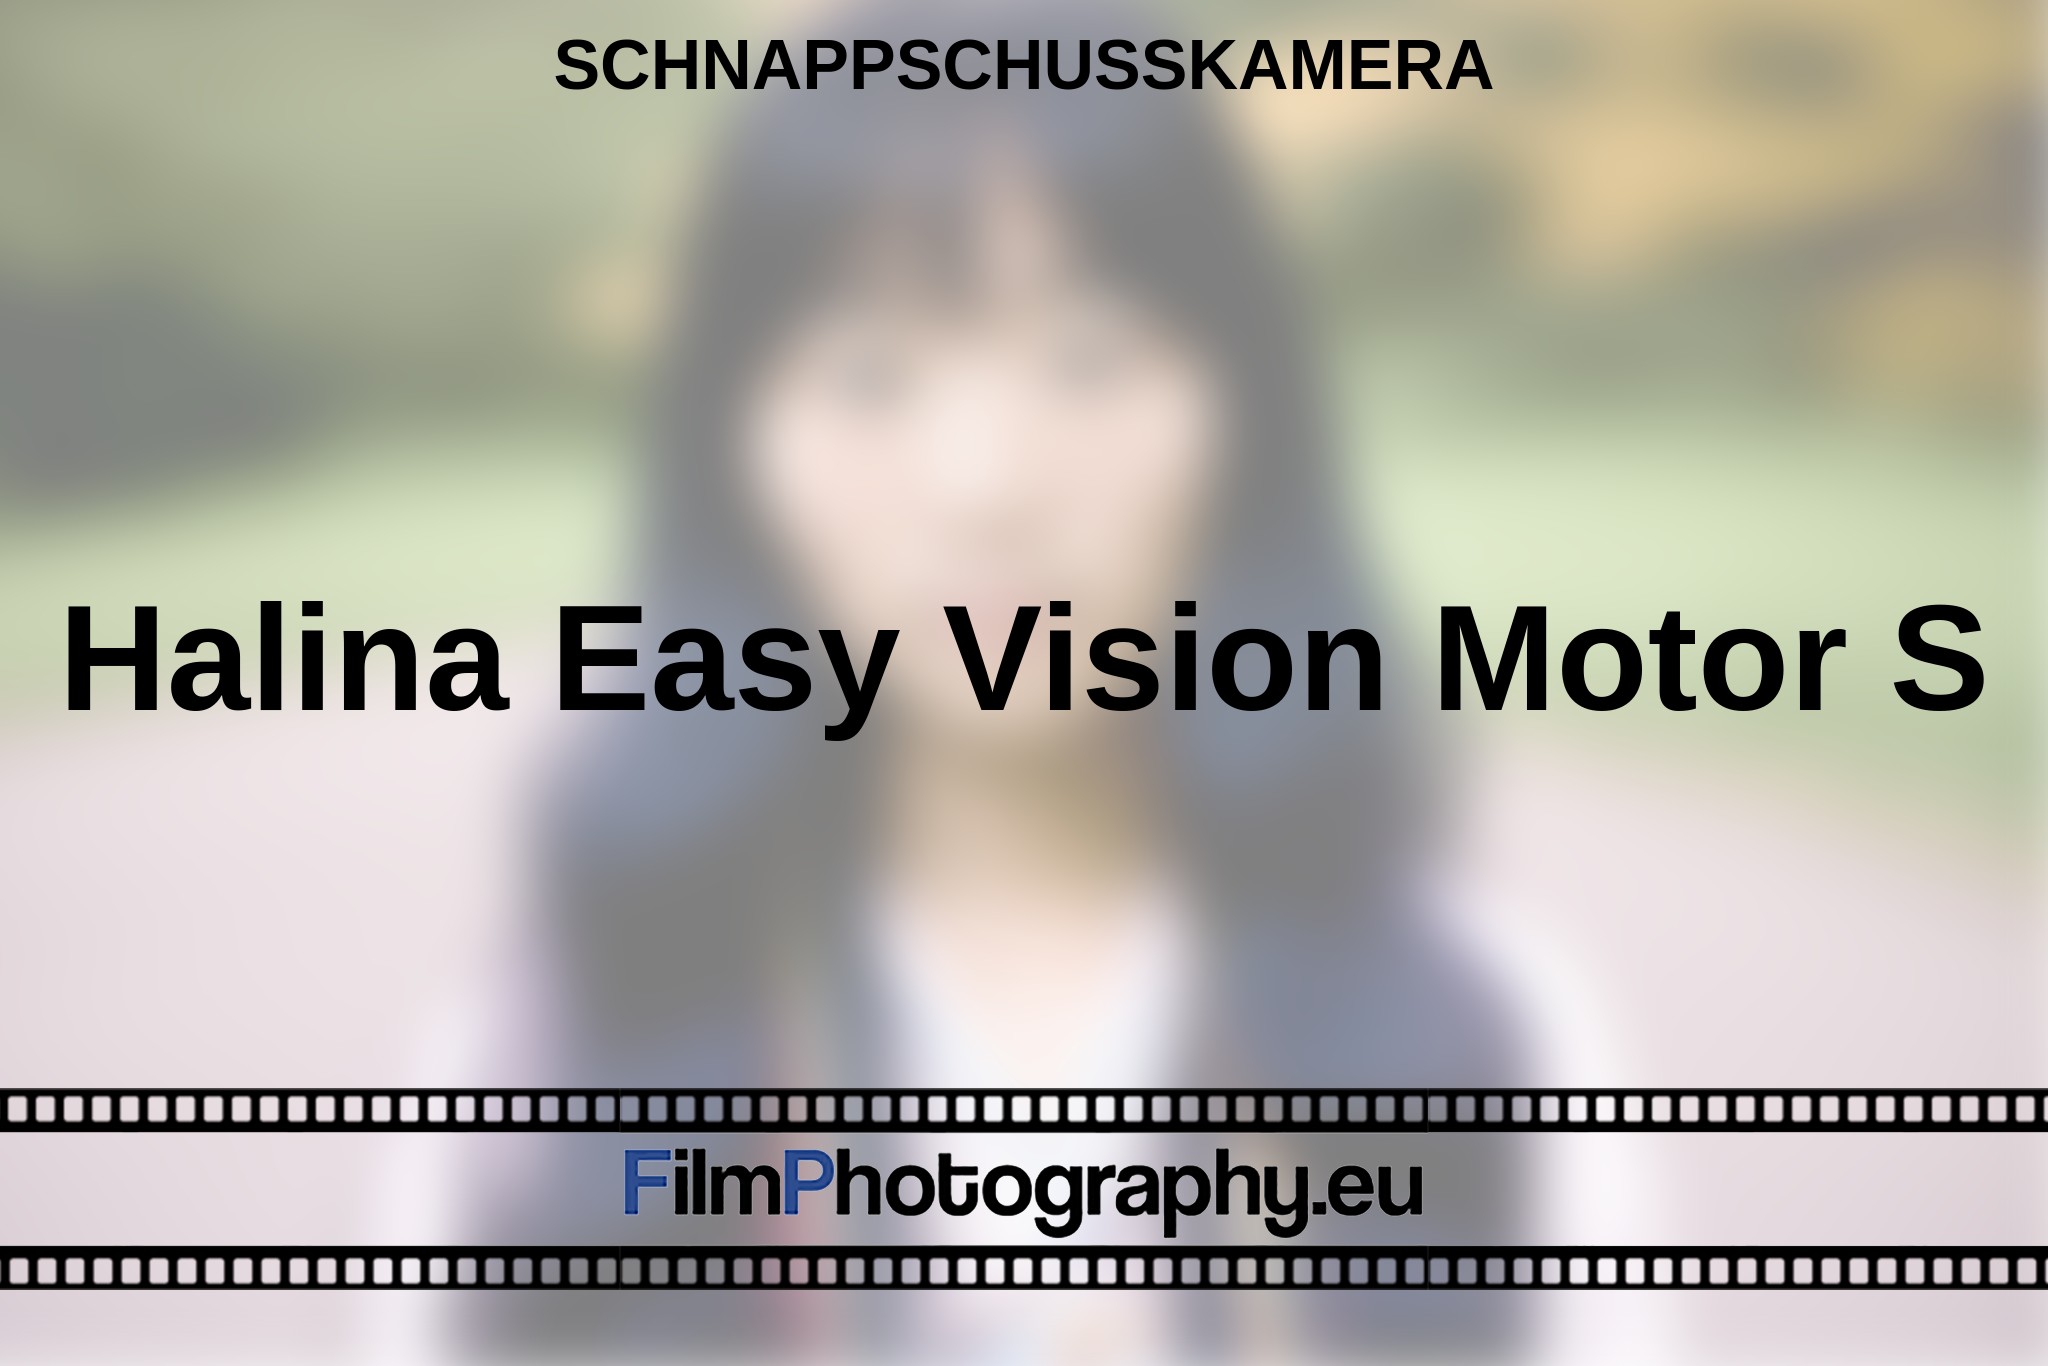 halina-easy-vision-motor-s-schnappschusskamera-bnv.jpg